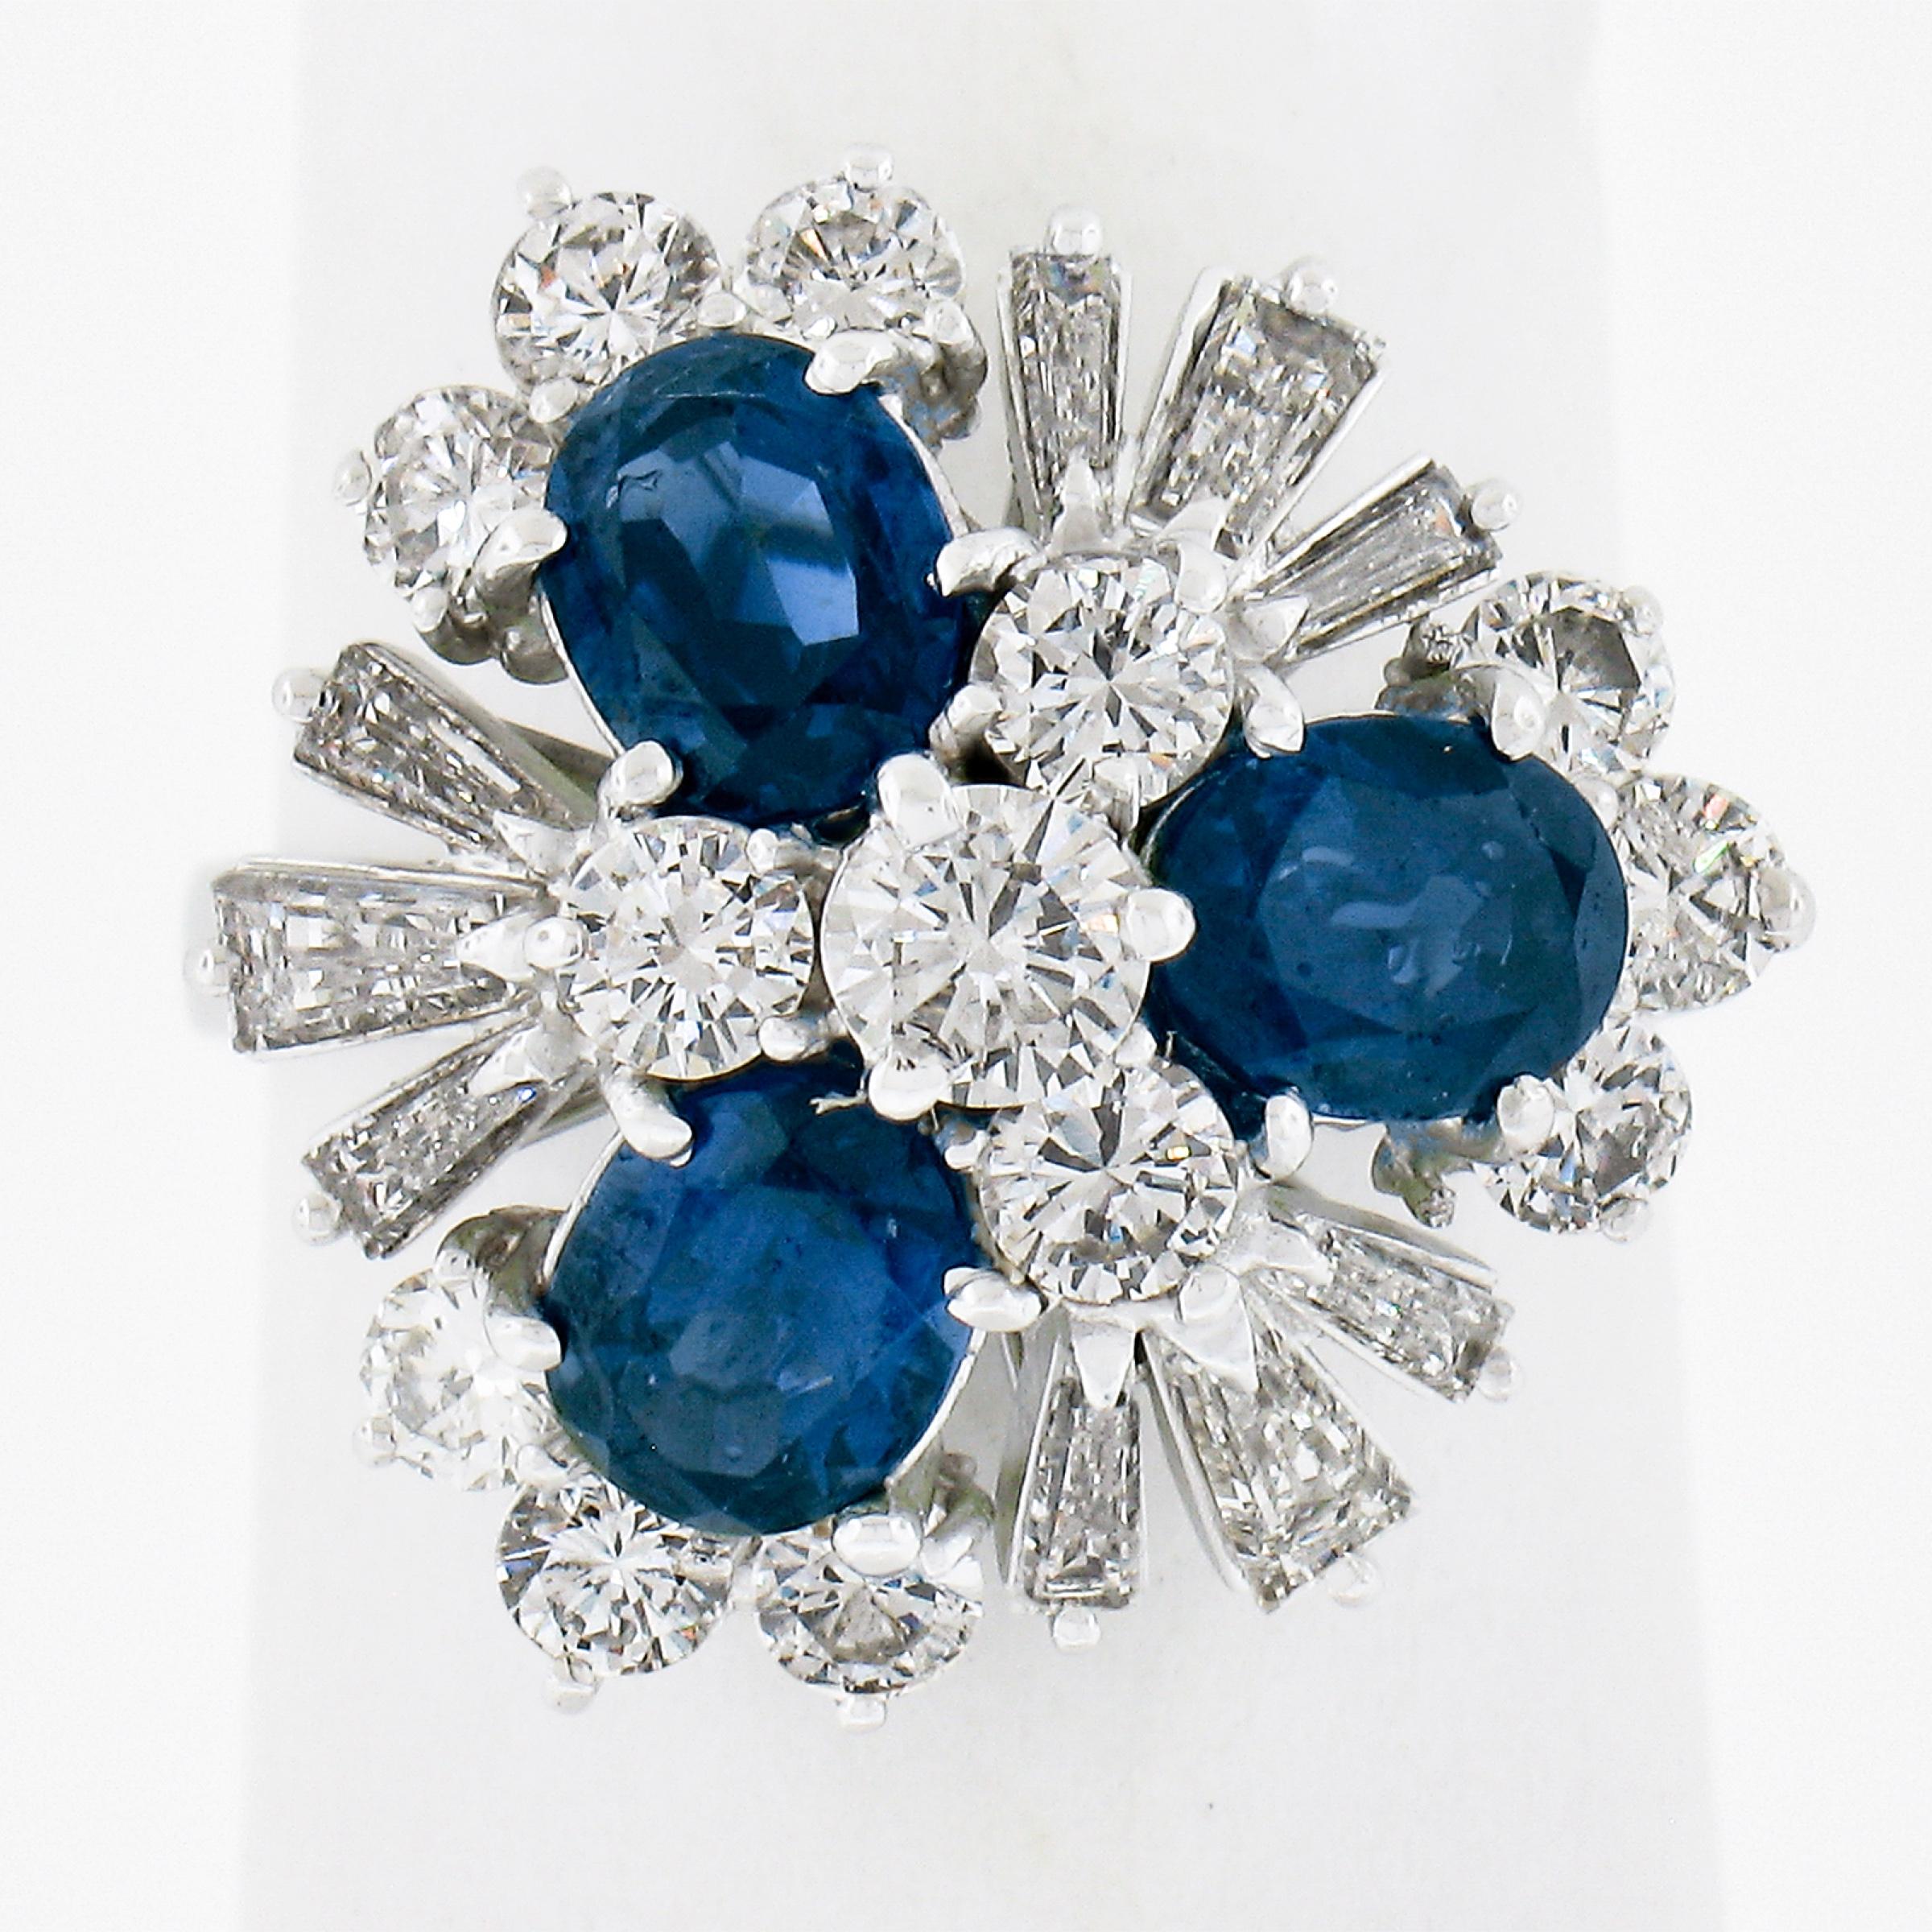 --Stone(s):--
(22) Natural Genuine Diamonds - Round Brilliant & Baguette Cut - Prong Set - G-I Color - VS1-I1 Clarity - 1.30-1.50ctw (approx.)
(3) Natural Genuine Sapphires - Oval Brilliant Cut - Prong Set - Excellent Royal Blue Color - 6.18x4.45mm